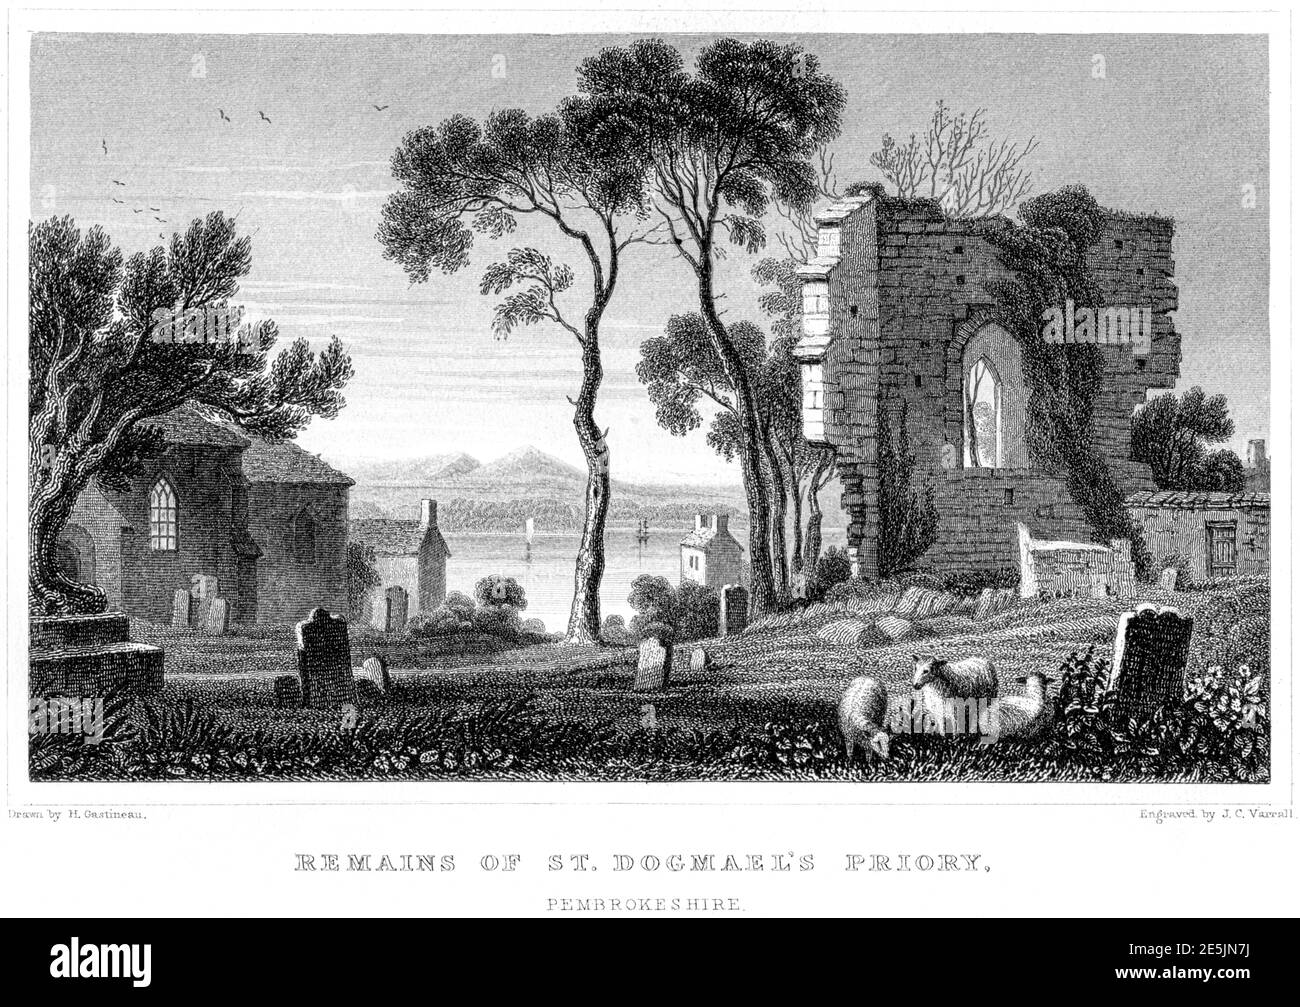 Ein Stich der Überreste des Priorats St. Dogmaels, Pembrokeshire, gescannt in hoher Auflösung aus einem Buch aus dem Jahr 1854. Für urheberrechtlich frei gehalten. Stockfoto